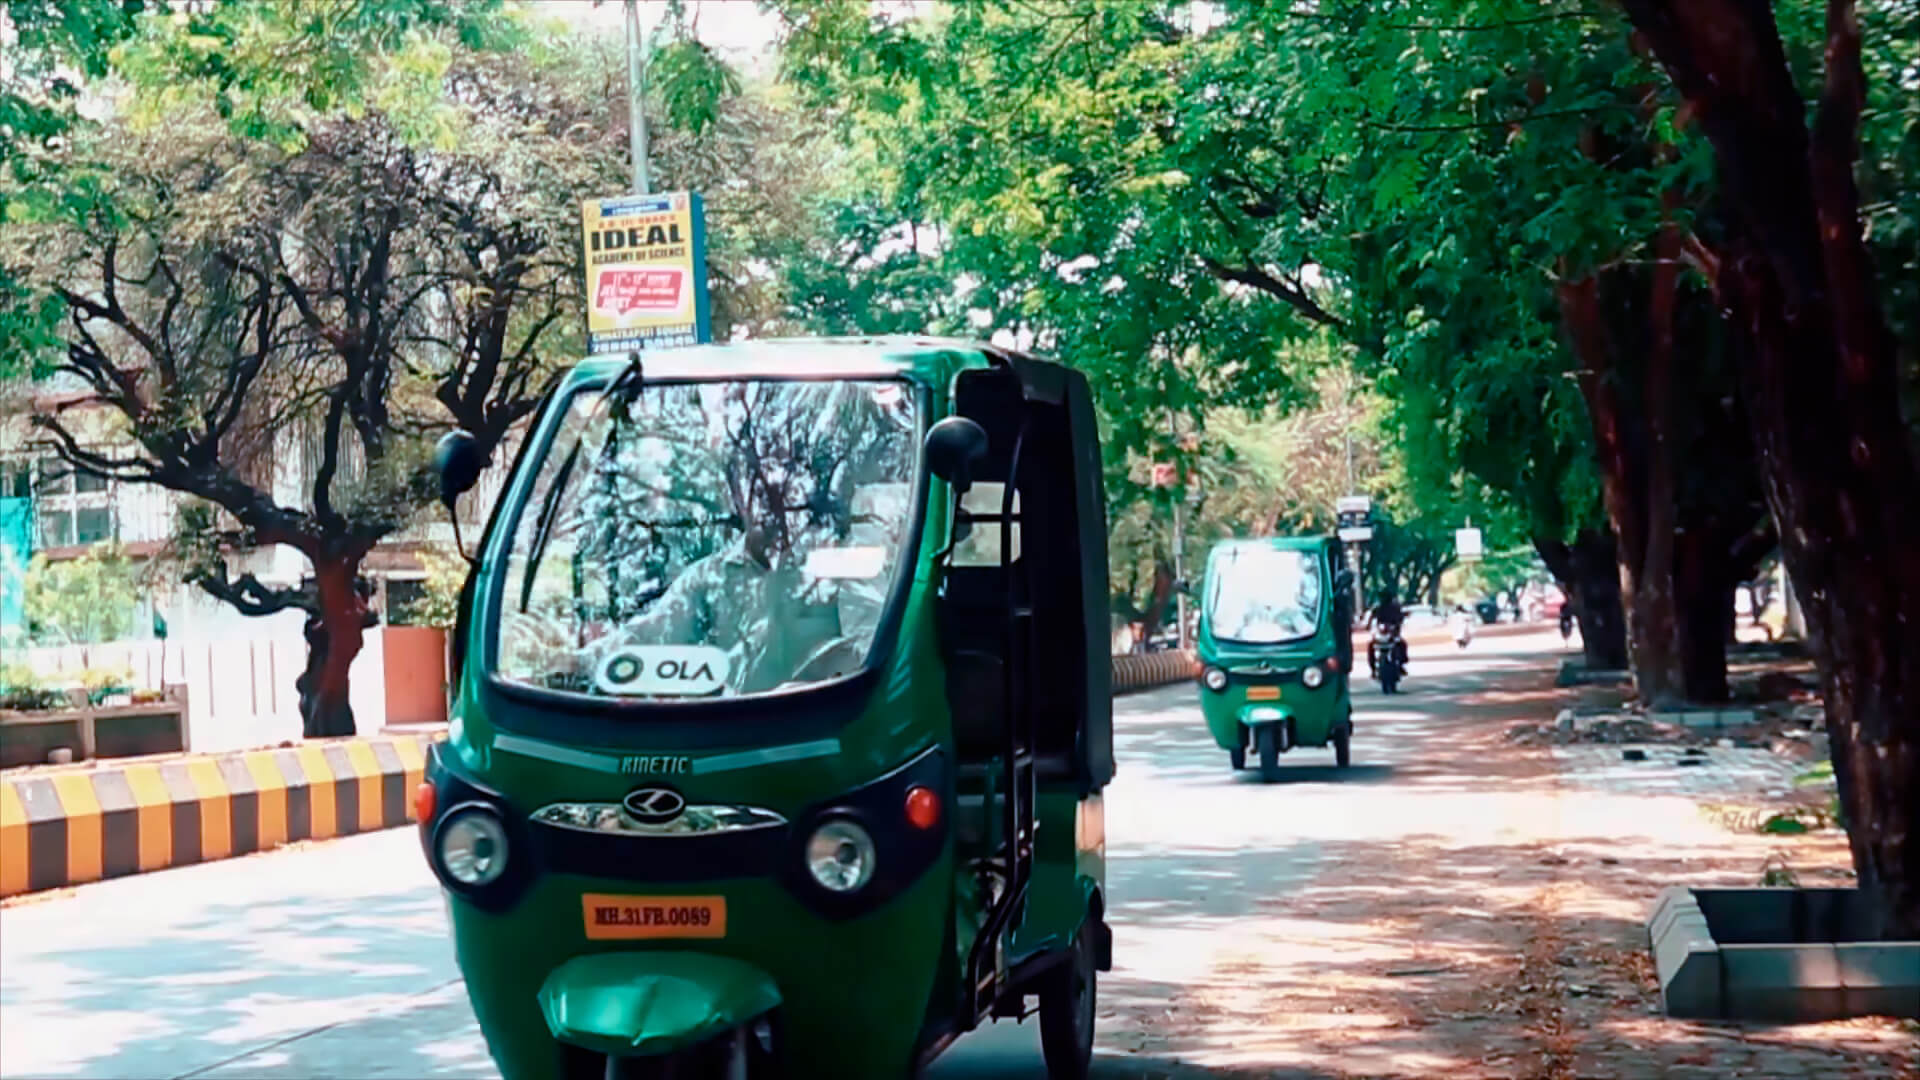 Ola Electric Mobility поставит на дороги Индии 10 000 электрических рикш к 2021 году